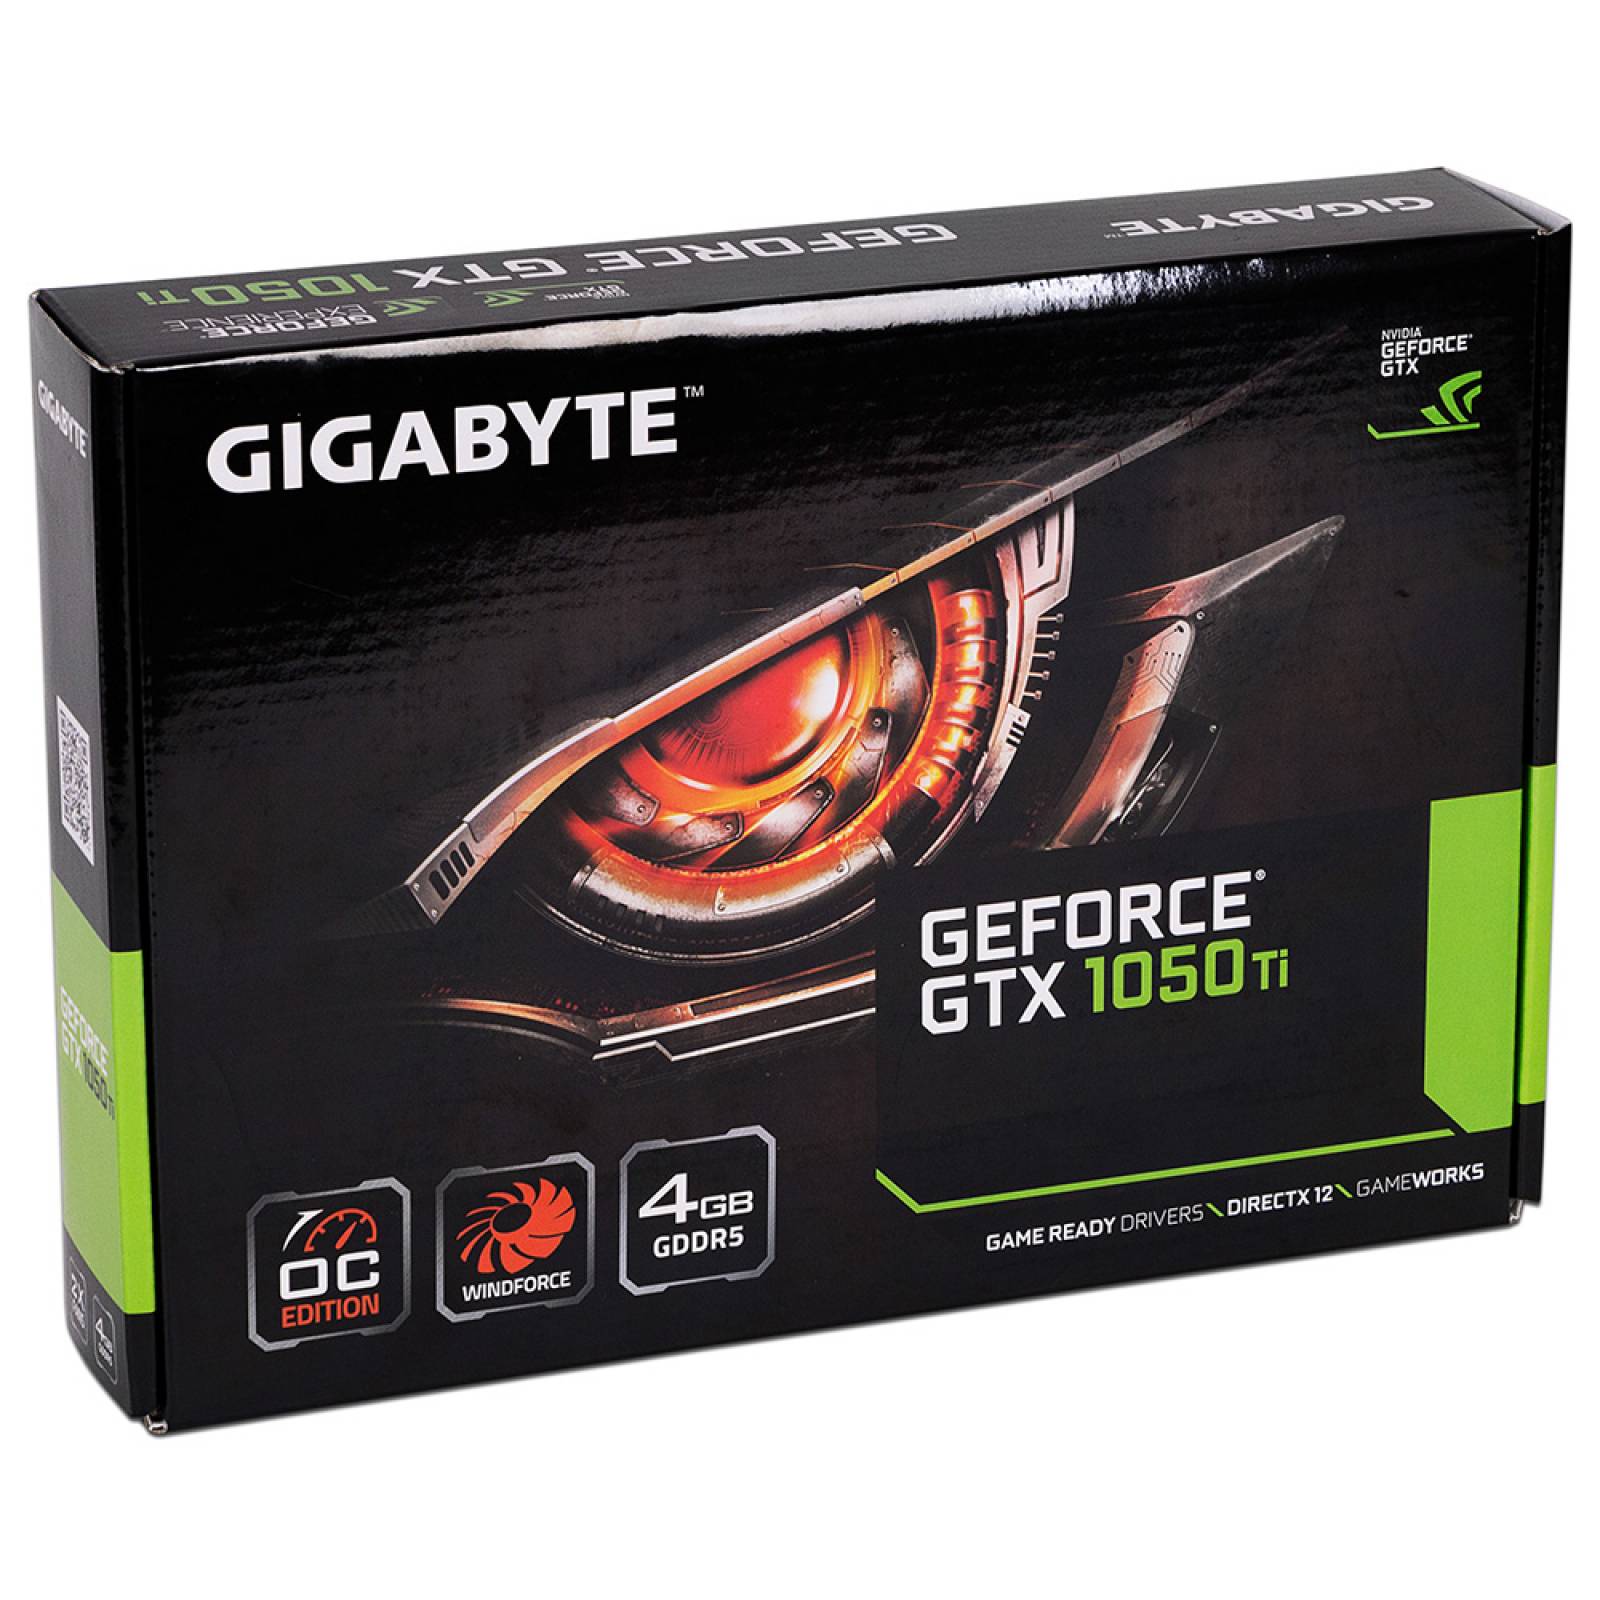 Tarjeta de Video NVIDIA GeForce GTX 1050 Ti Gigabyte WINDFORCE OC EDITION 4GB GDDR5 1xHDMI 1xDVI 1xDisplayPort PCI Express x16 3.0